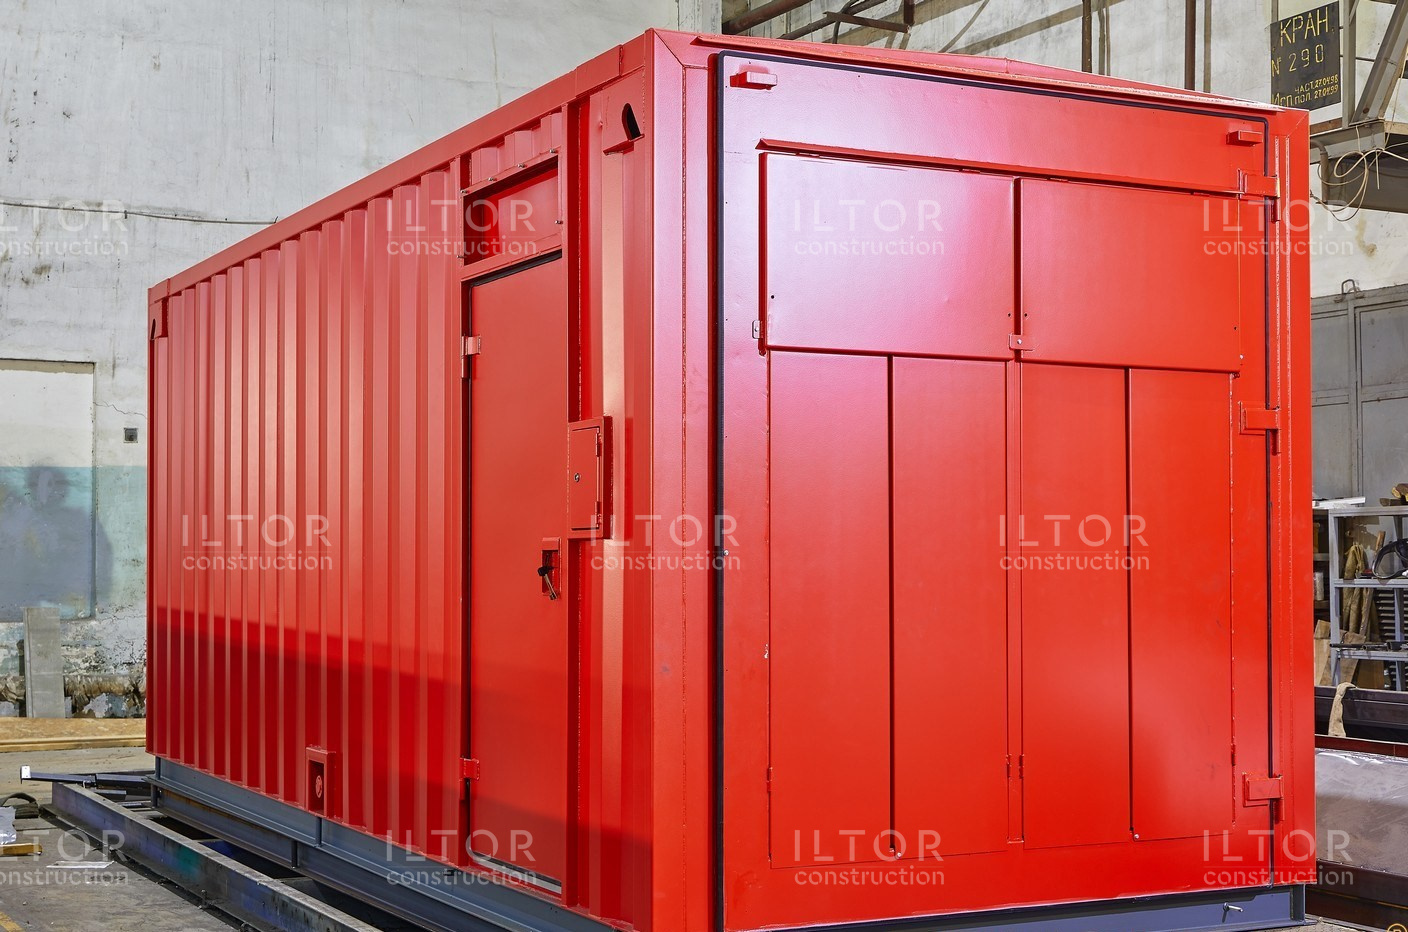 Производство контейнеров - ILTOR Construction